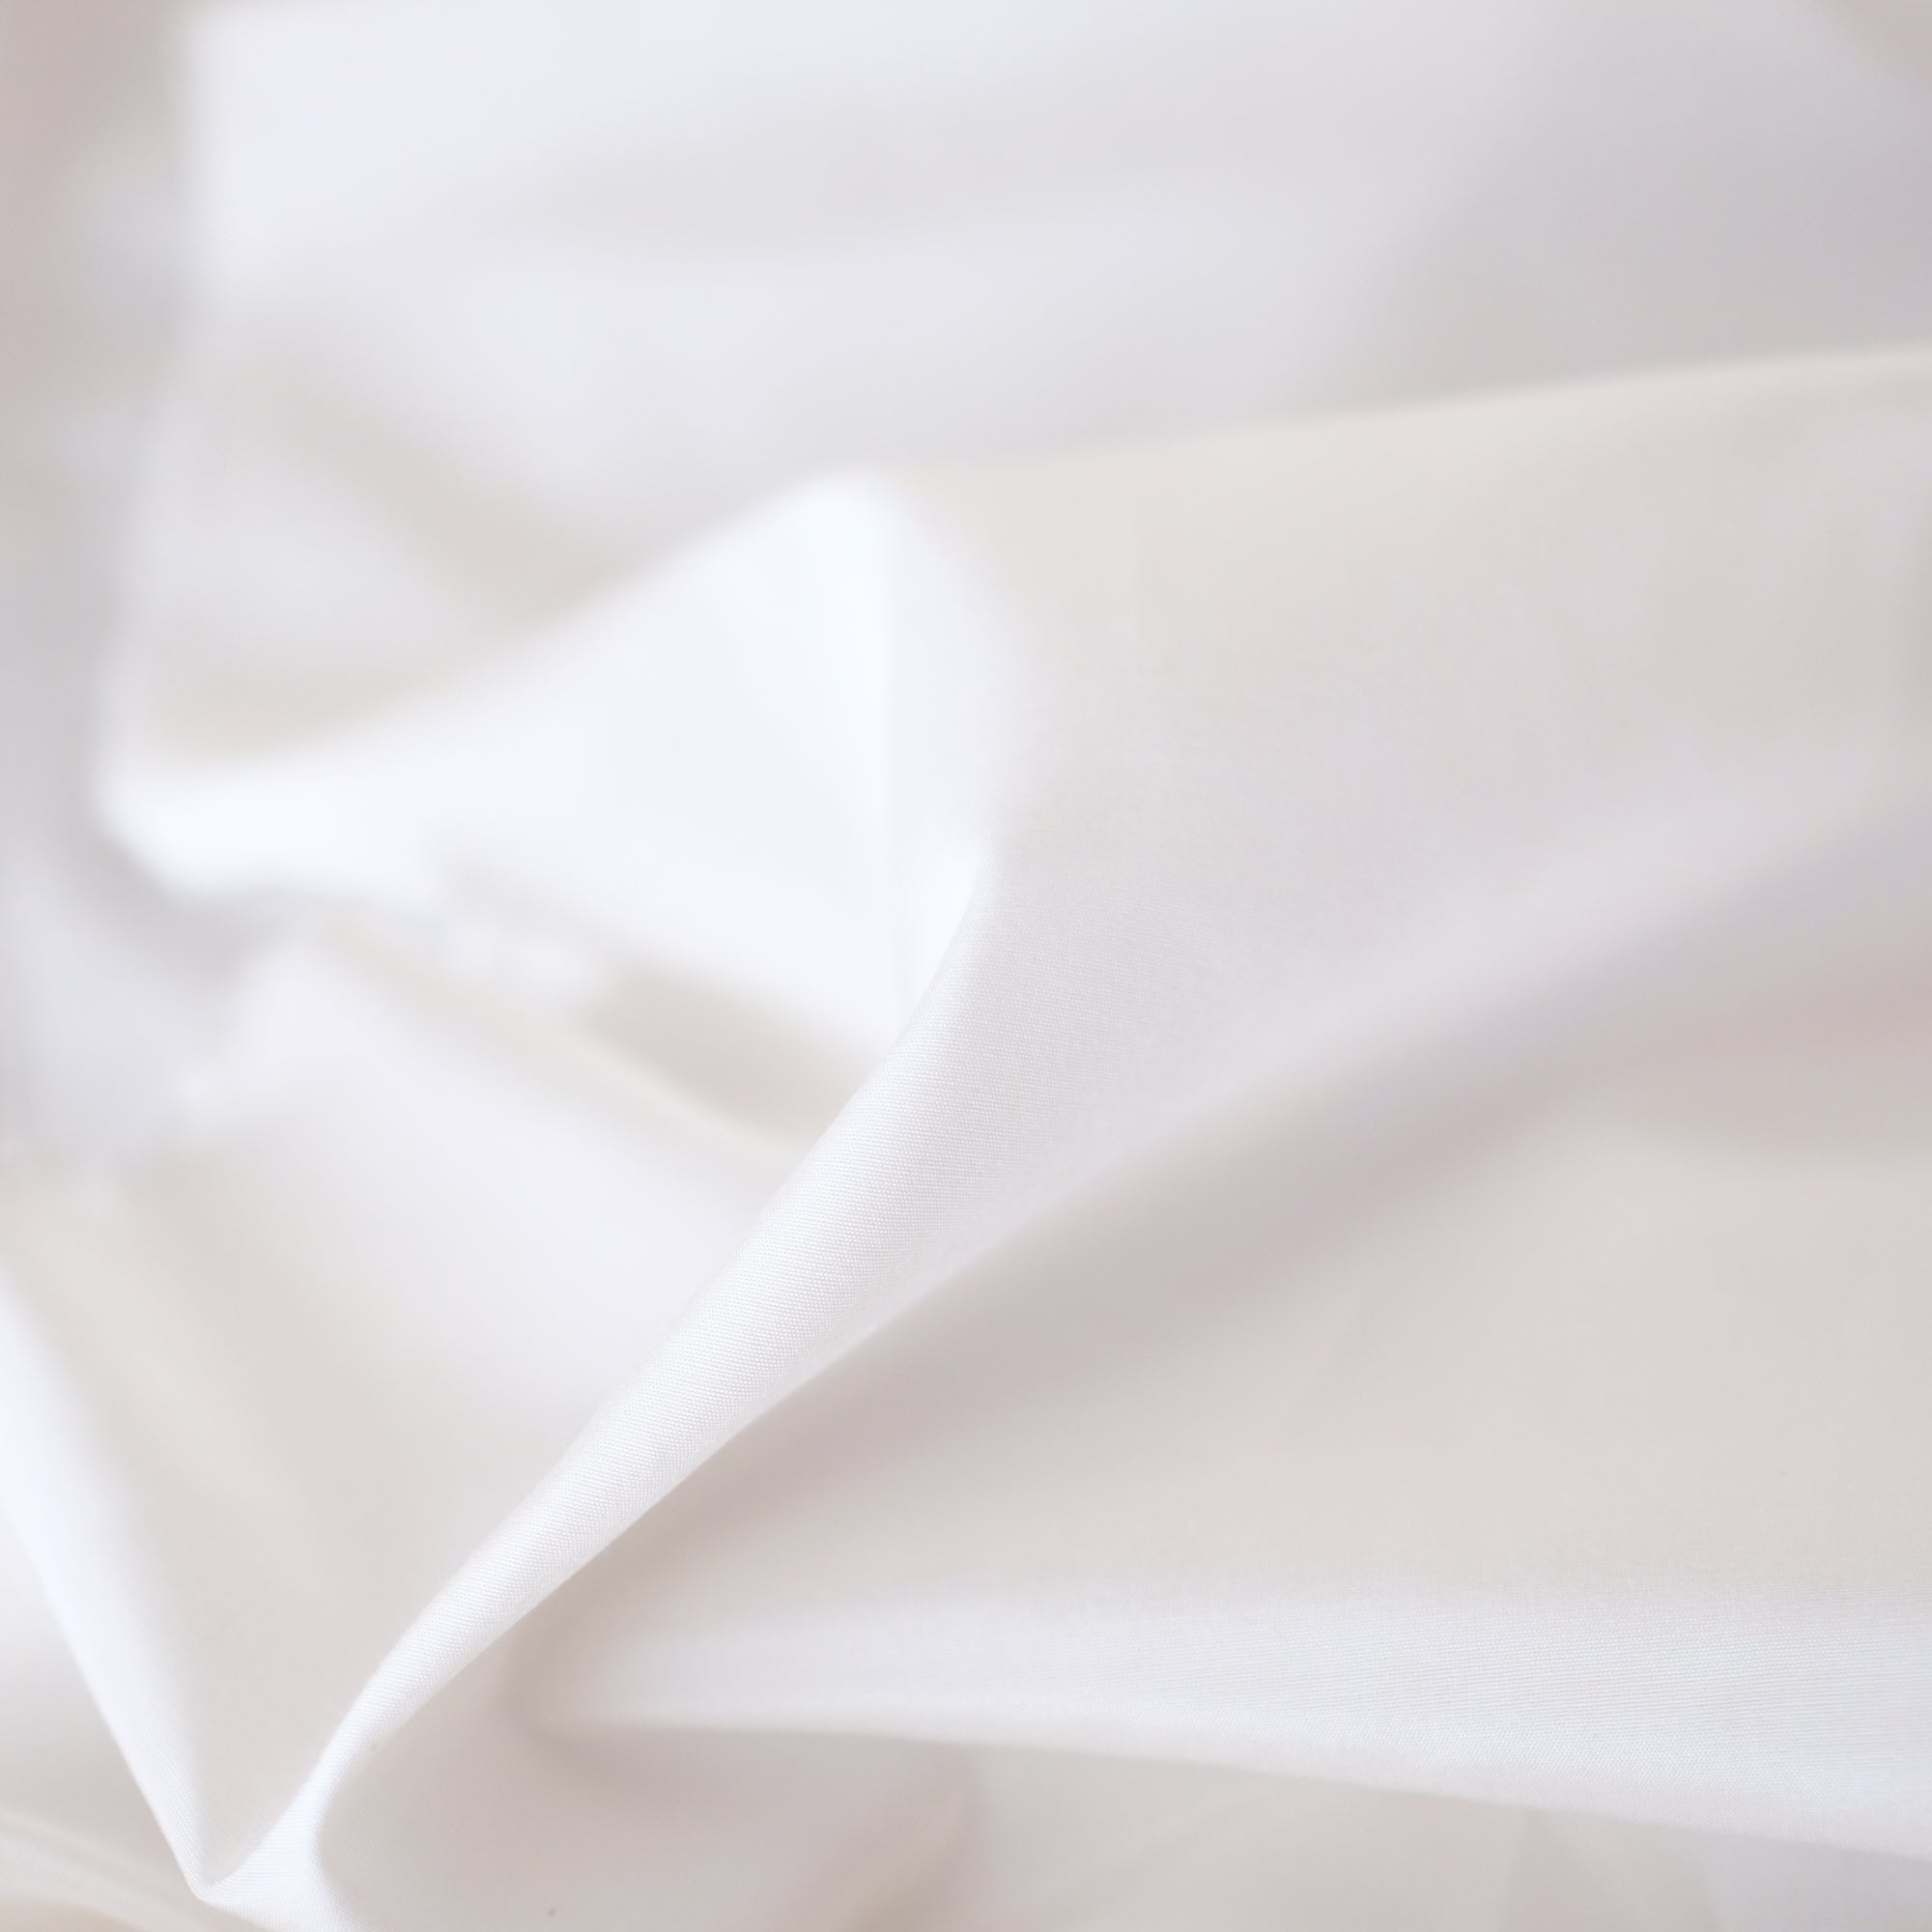 Label: Silk Cotton - 85% Silk 15% Cotton